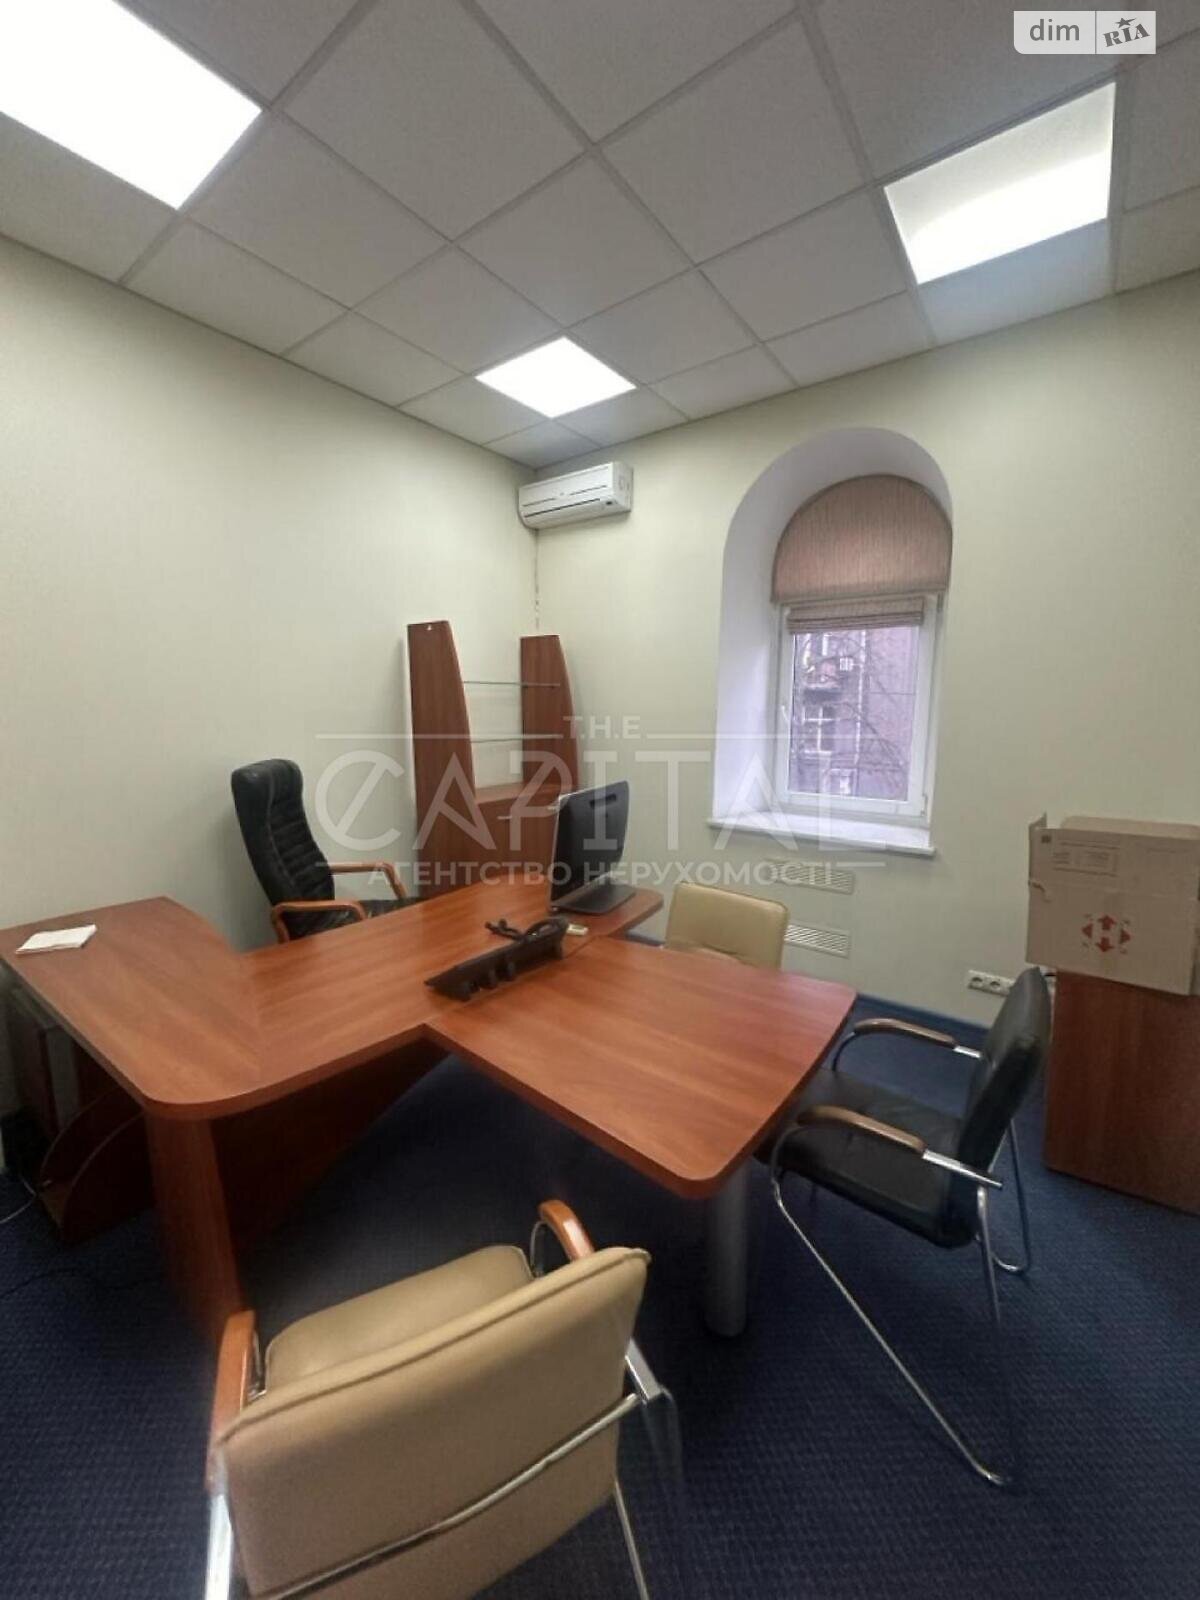 Аренда офисного помещения в Киеве, Ярославов Вал улица 26, помещений - 7, этаж - 2 фото 1